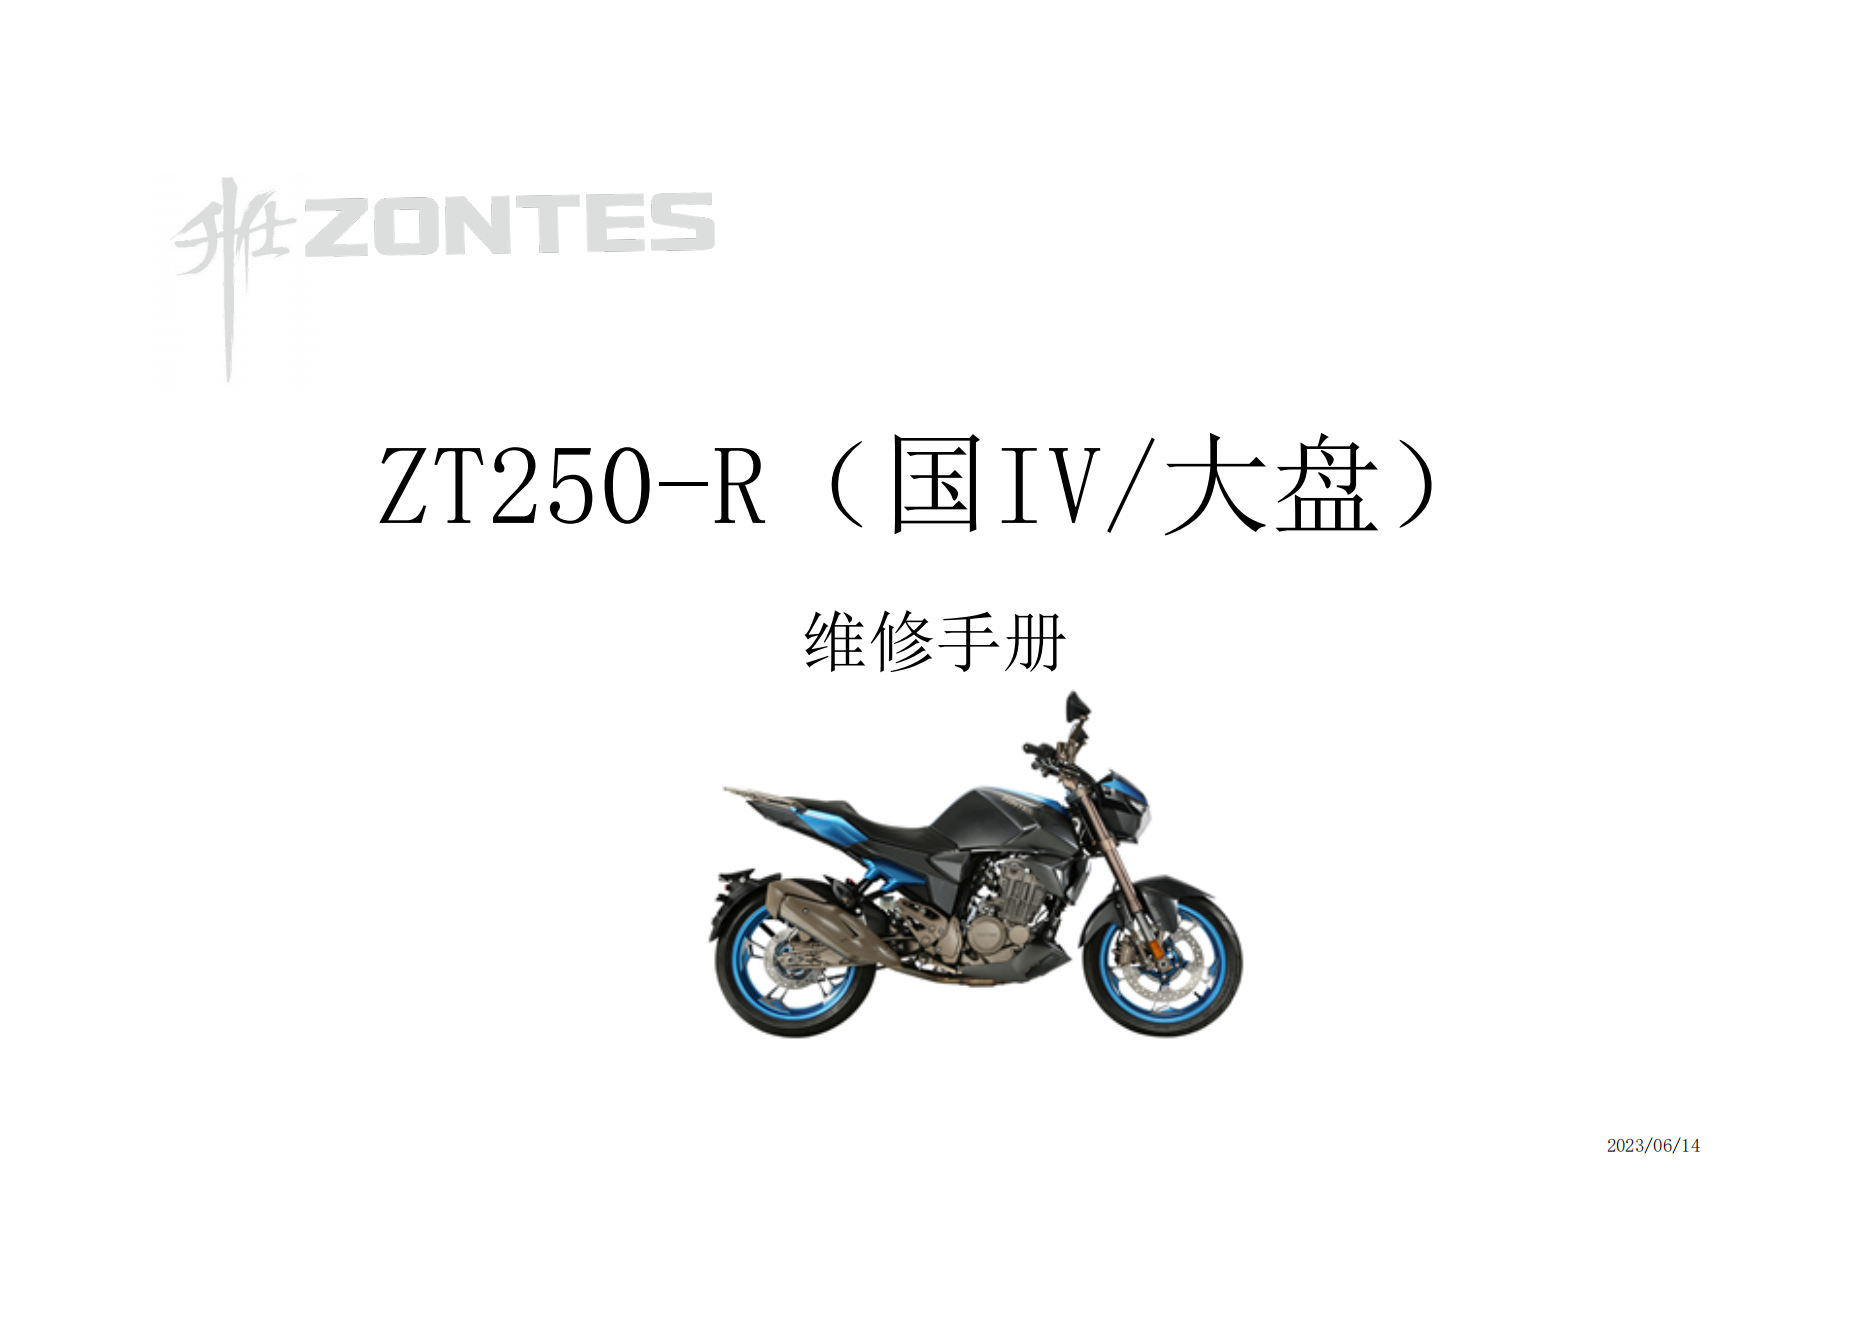 升仕ZT250-R国IV大盘维修手册插图